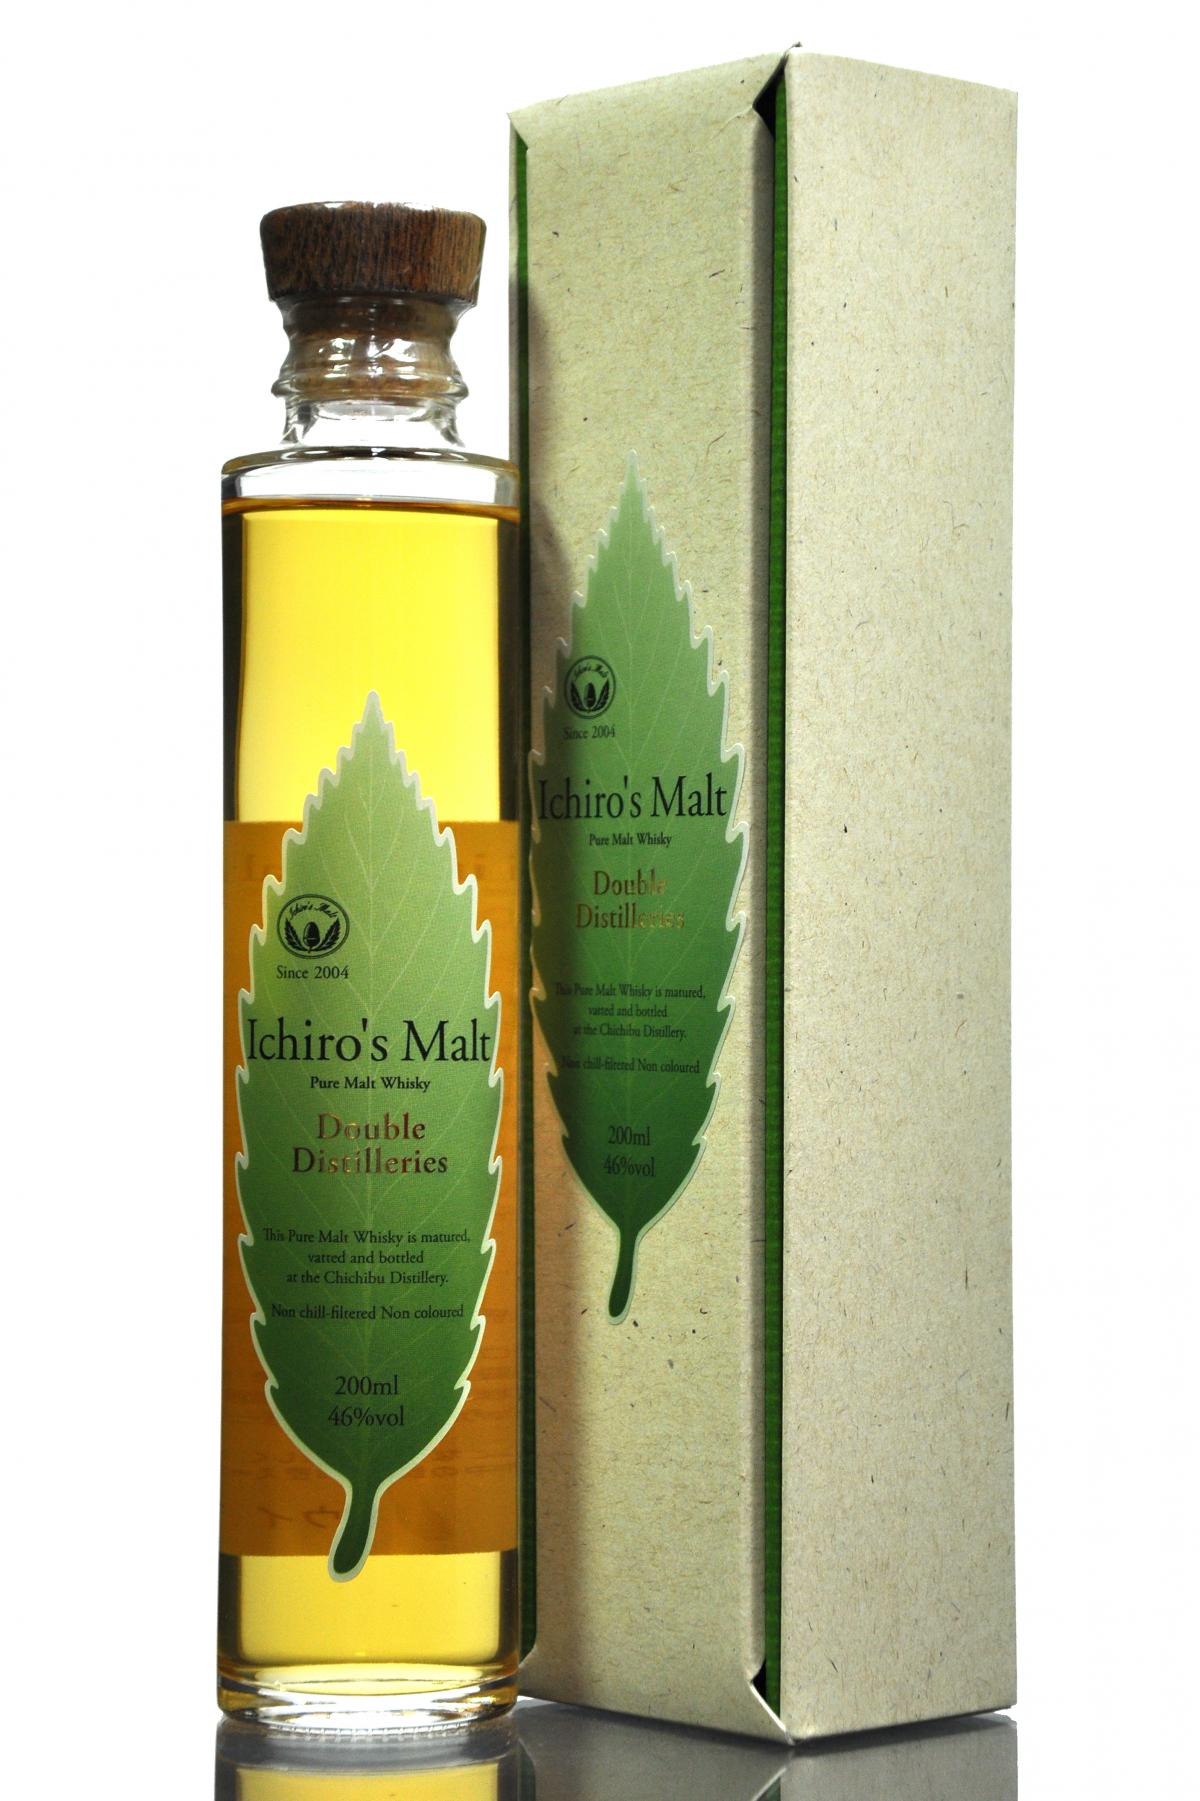 Ichiros Malt - Double Distilleries